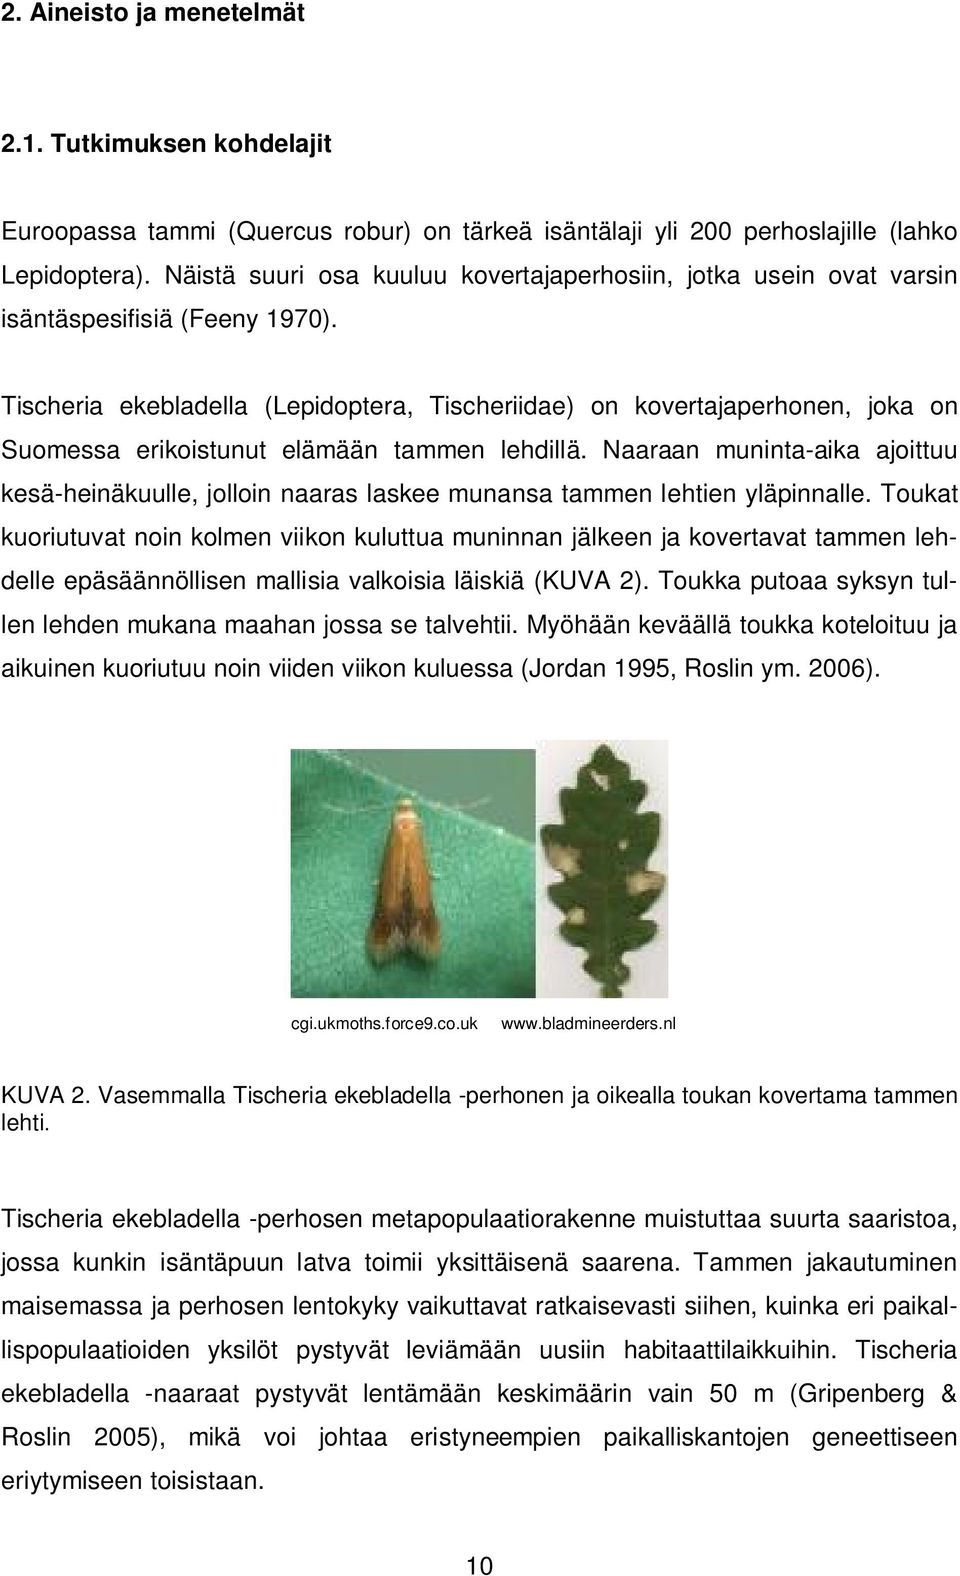 Tischeria ekebladella (Lepidoptera, Tischeriidae) on kovertajaperhonen, joka on Suomessa erikoistunut elämään tammen lehdillä.